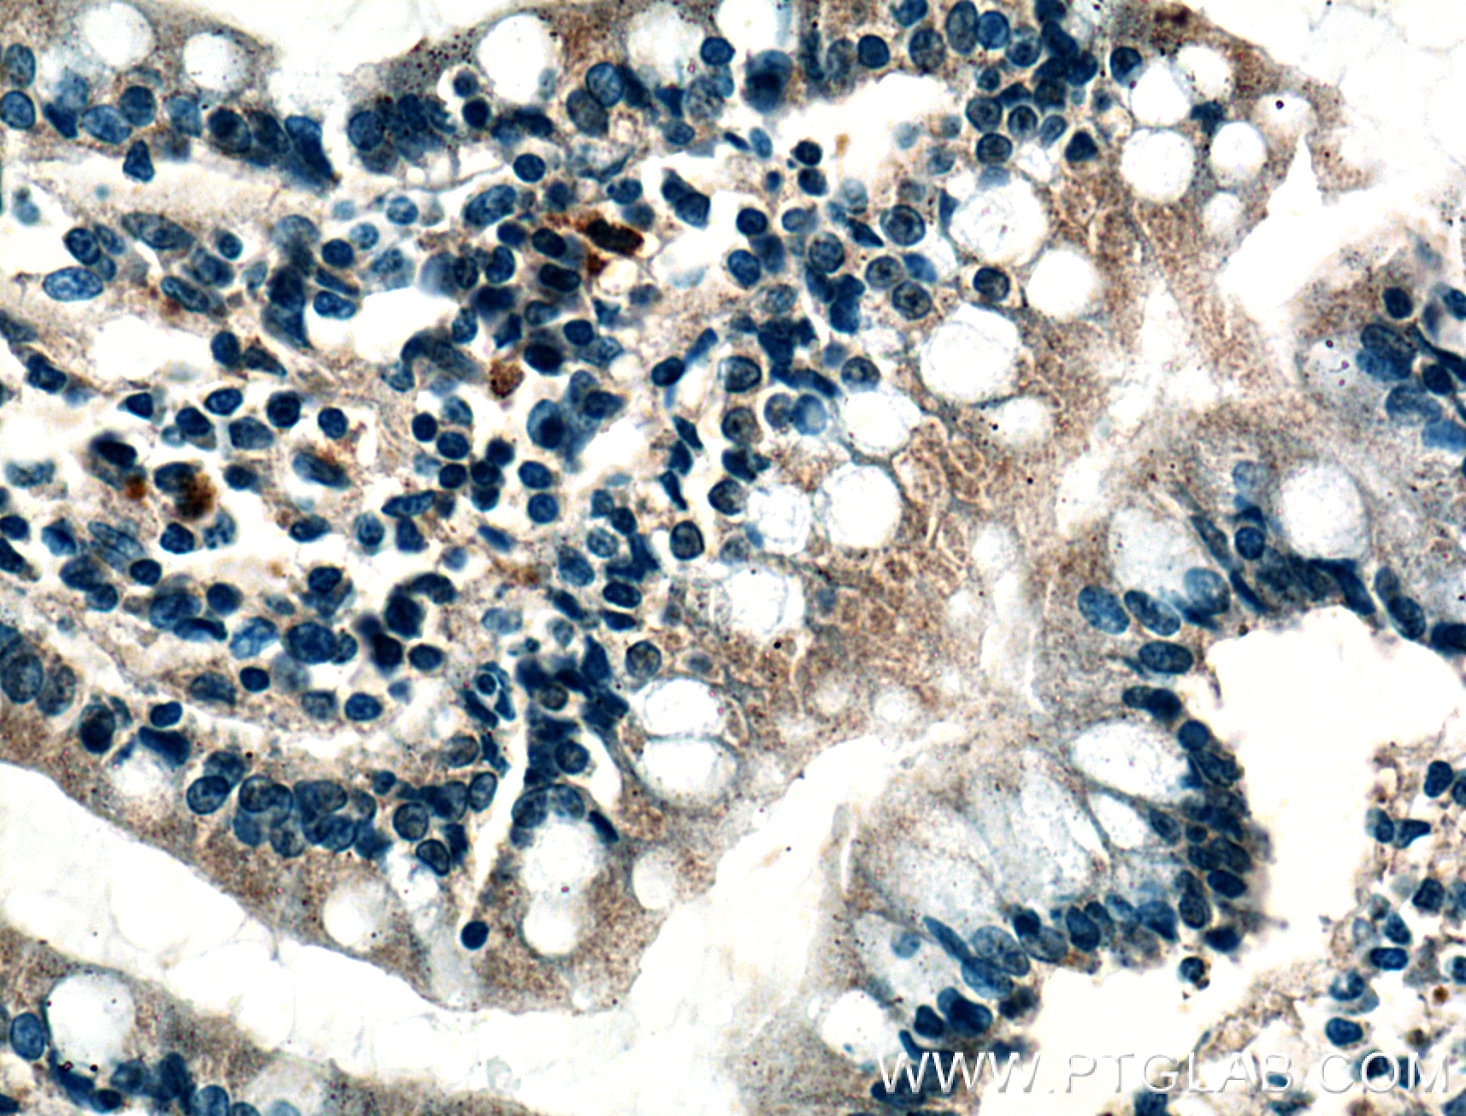 Immunohistochemistry (IHC) staining of human small intestine tissue using Calbindin-D28k Monoclonal antibody (66394-1-Ig)